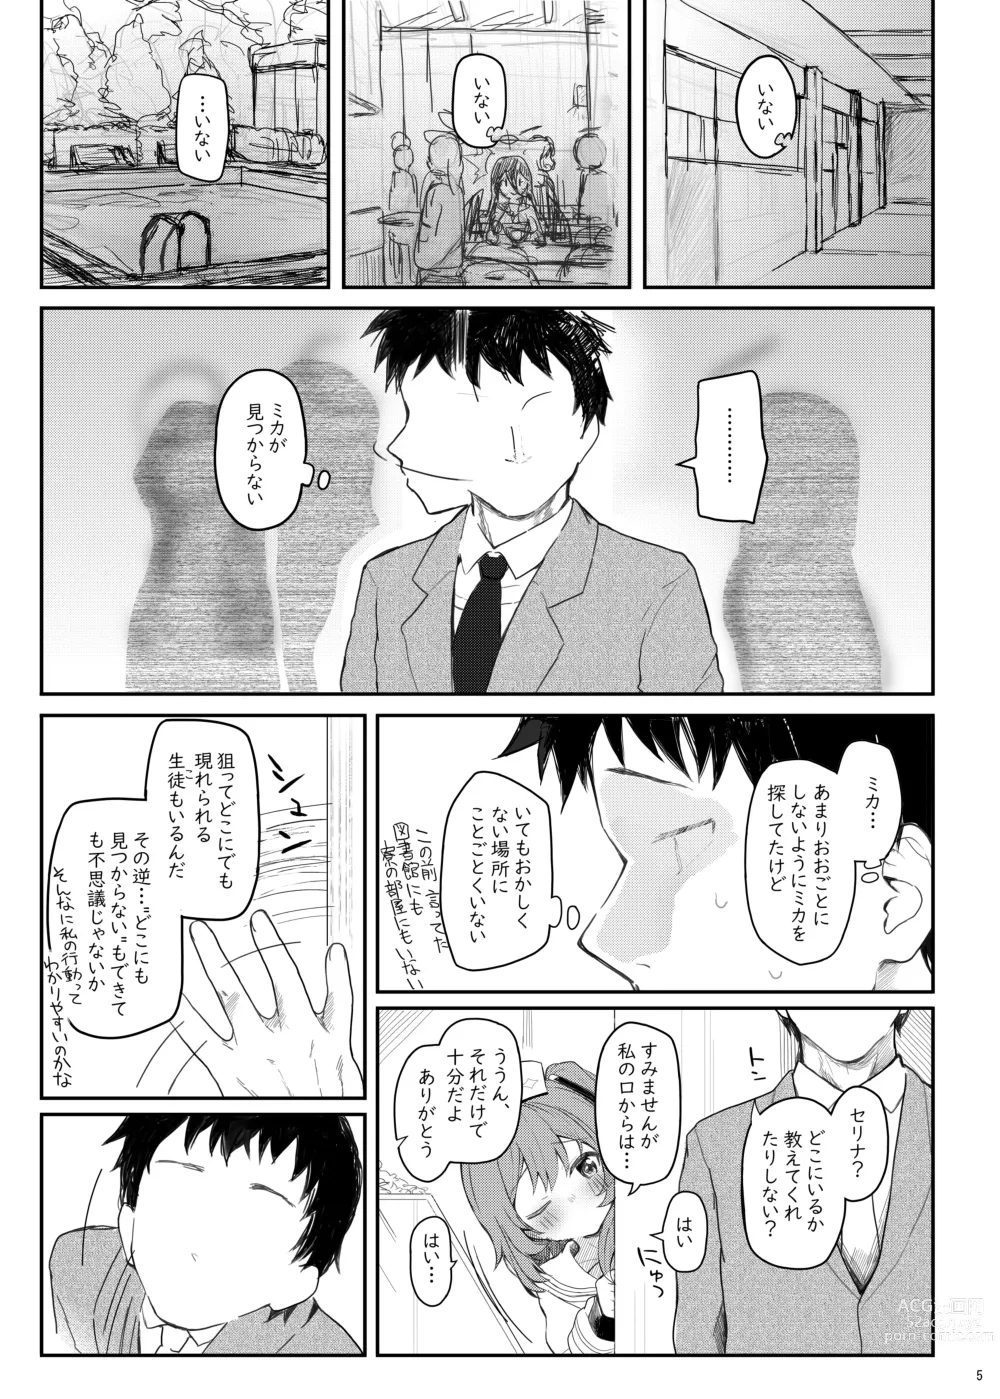 Page 4 of doujinshi Tenshi de Warui Ko DEAREST